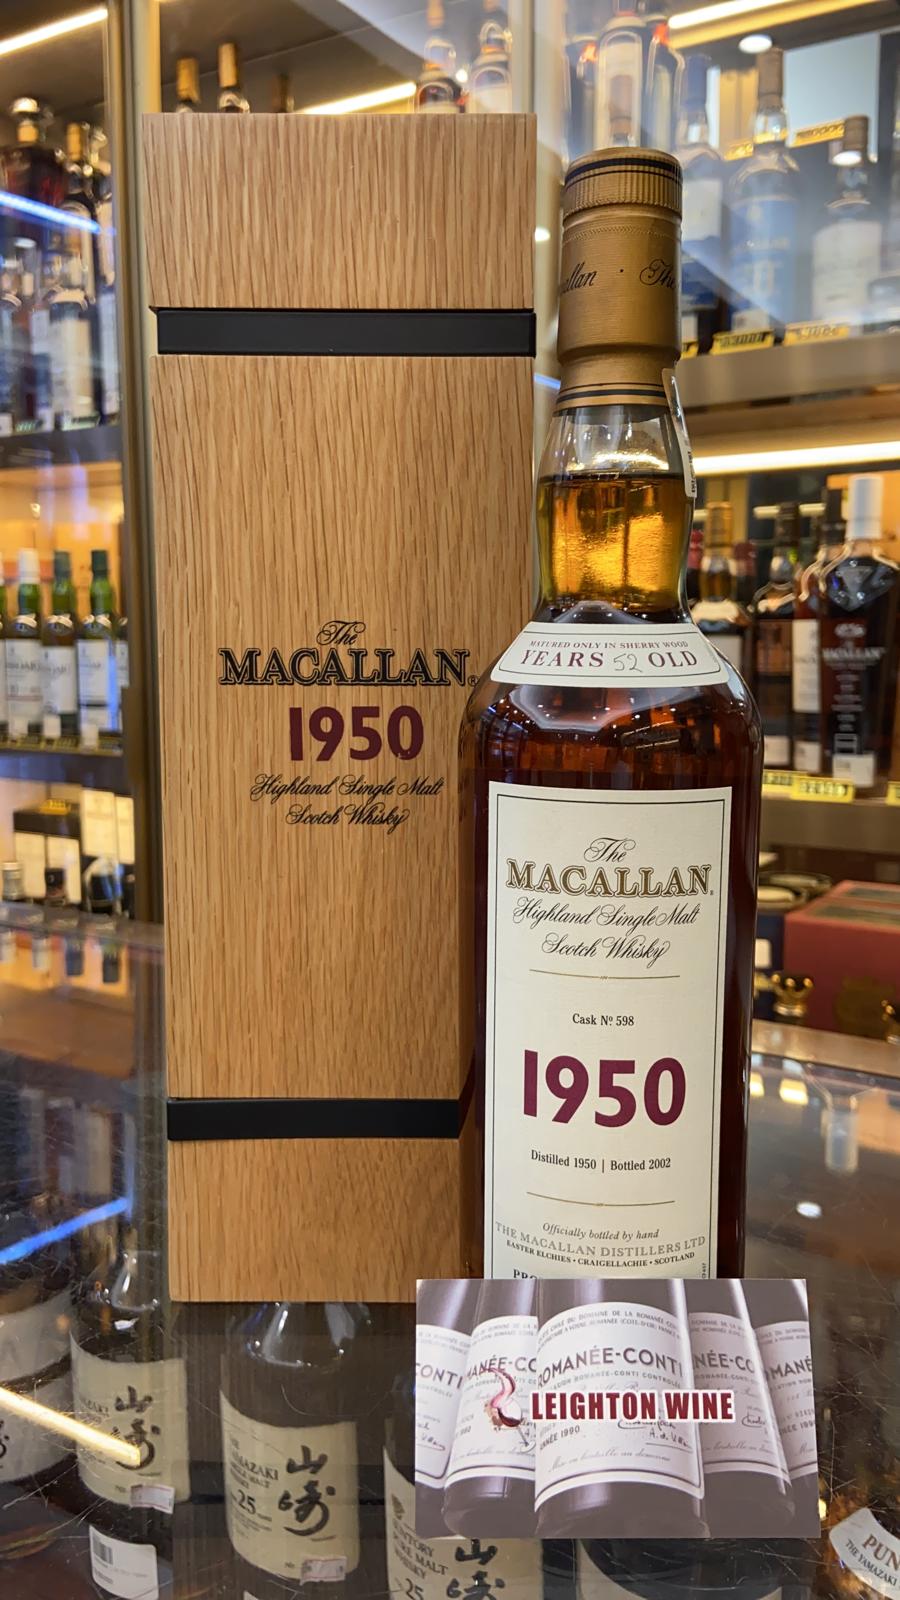 Macallan 1950 52 Year Old Fine & Rare